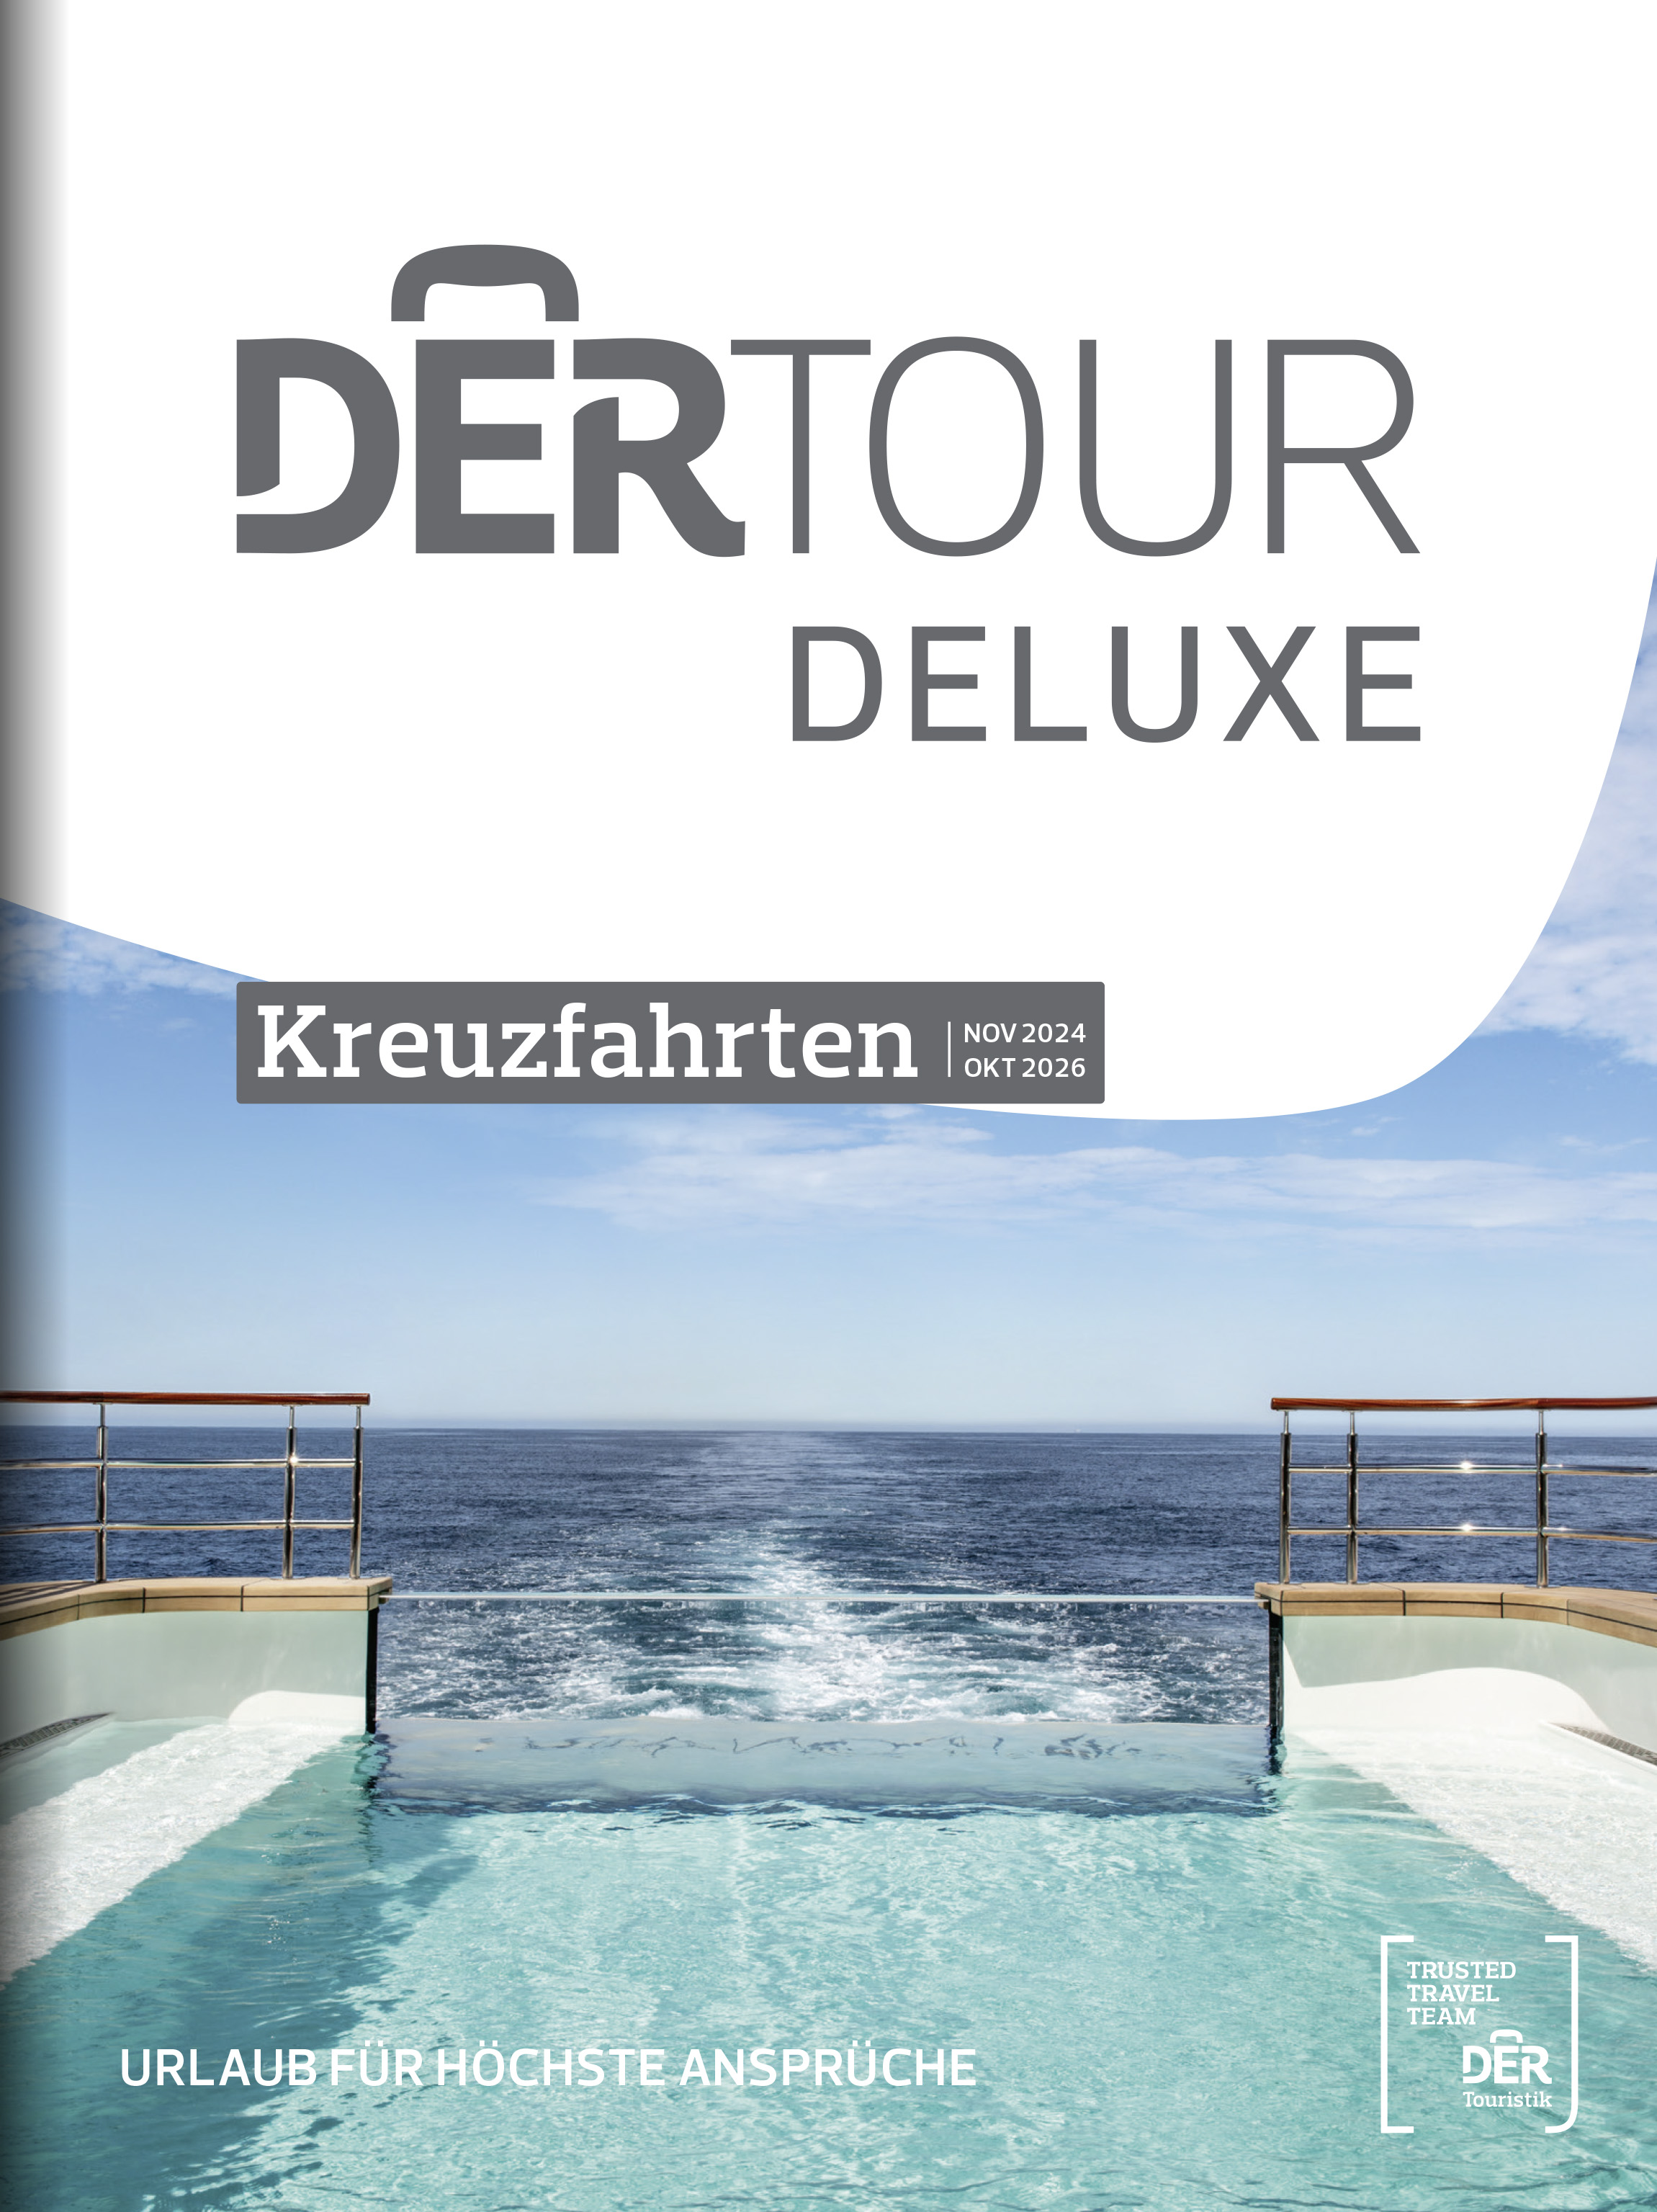 DERTOUR DELUXE Kreuzfahrten 2024/2026 (JP)